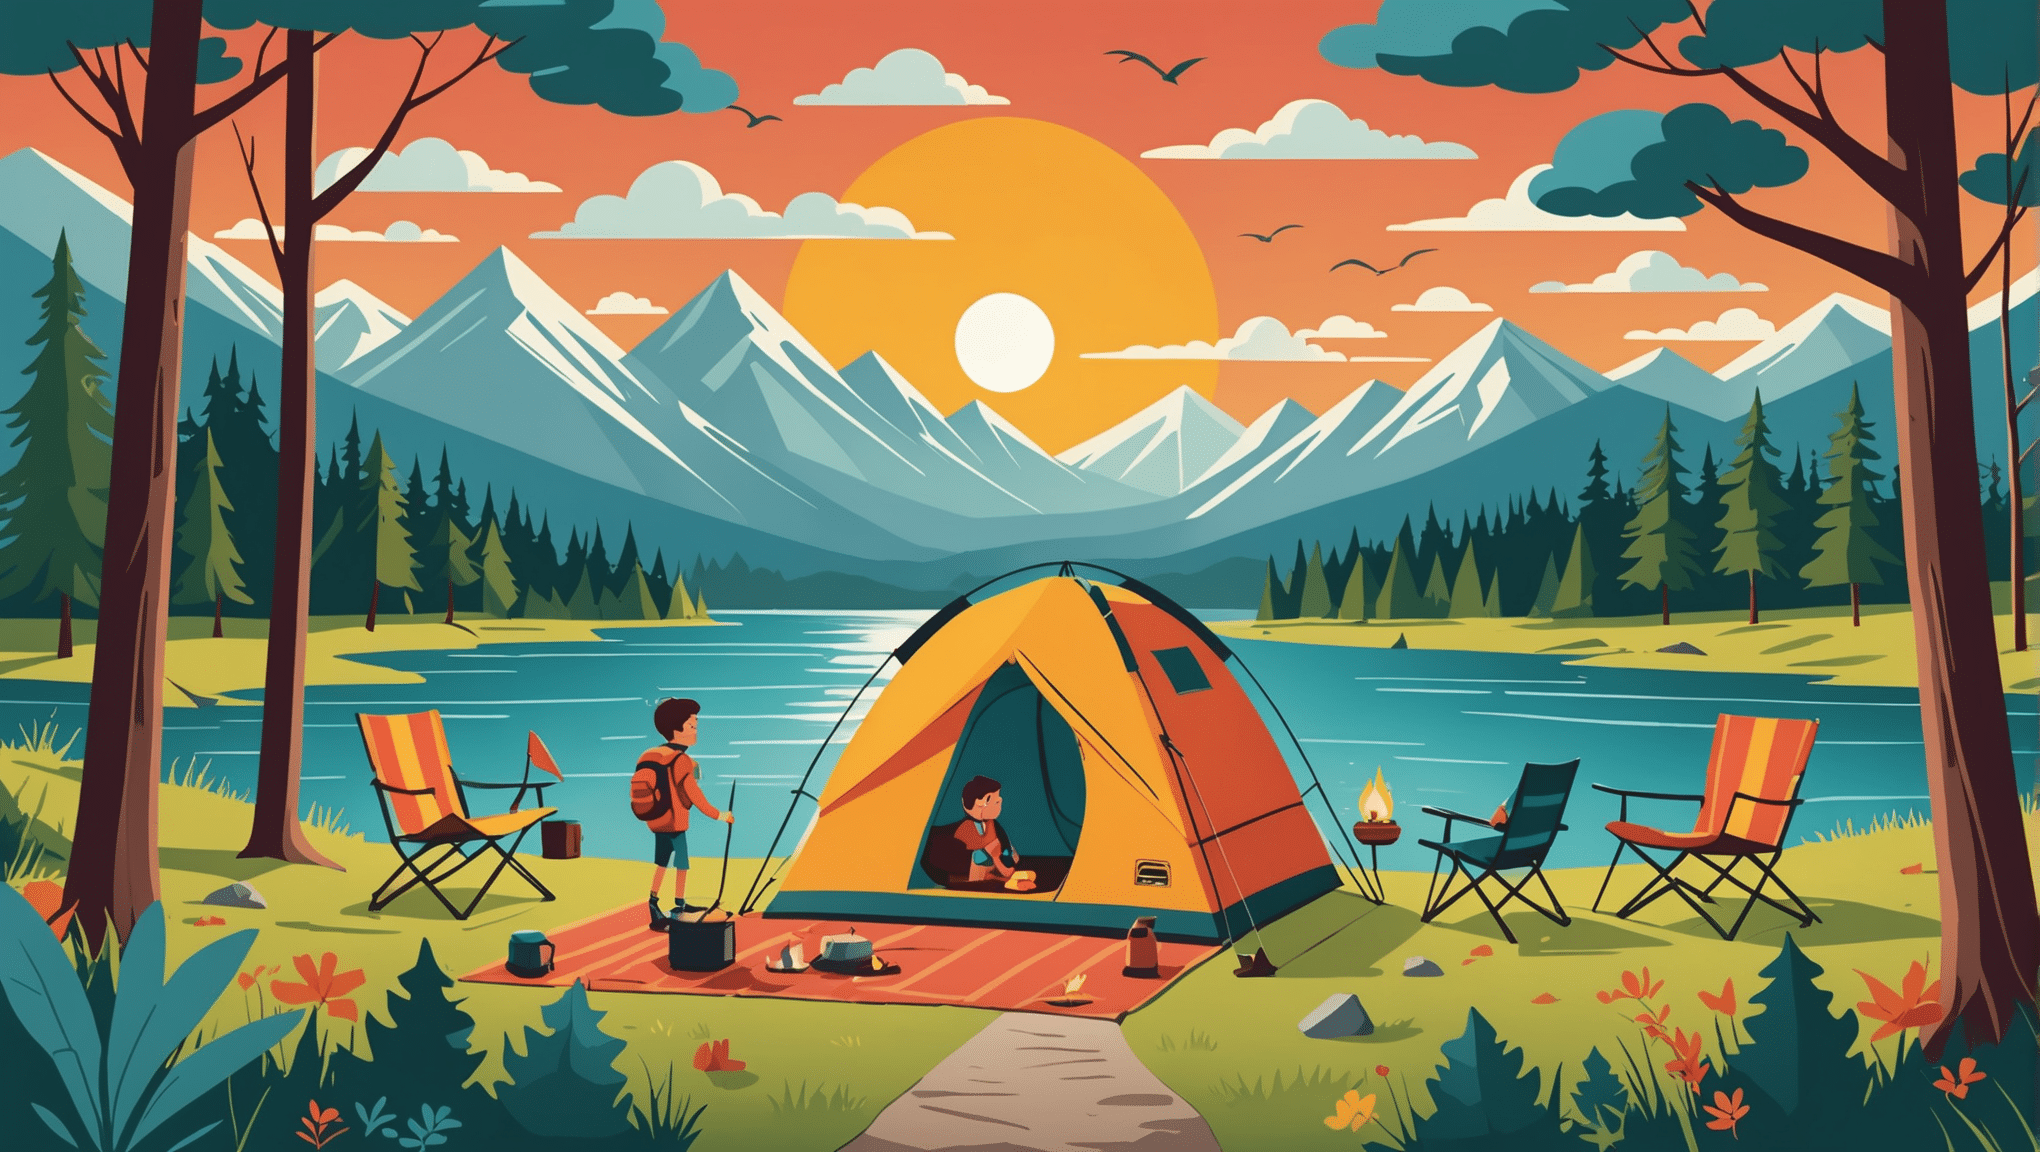 découvrez tous nos conseils pour des vacances en camping inoubliables en famille. profitez d'un séjour réussi avec nos astuces et recommandations.